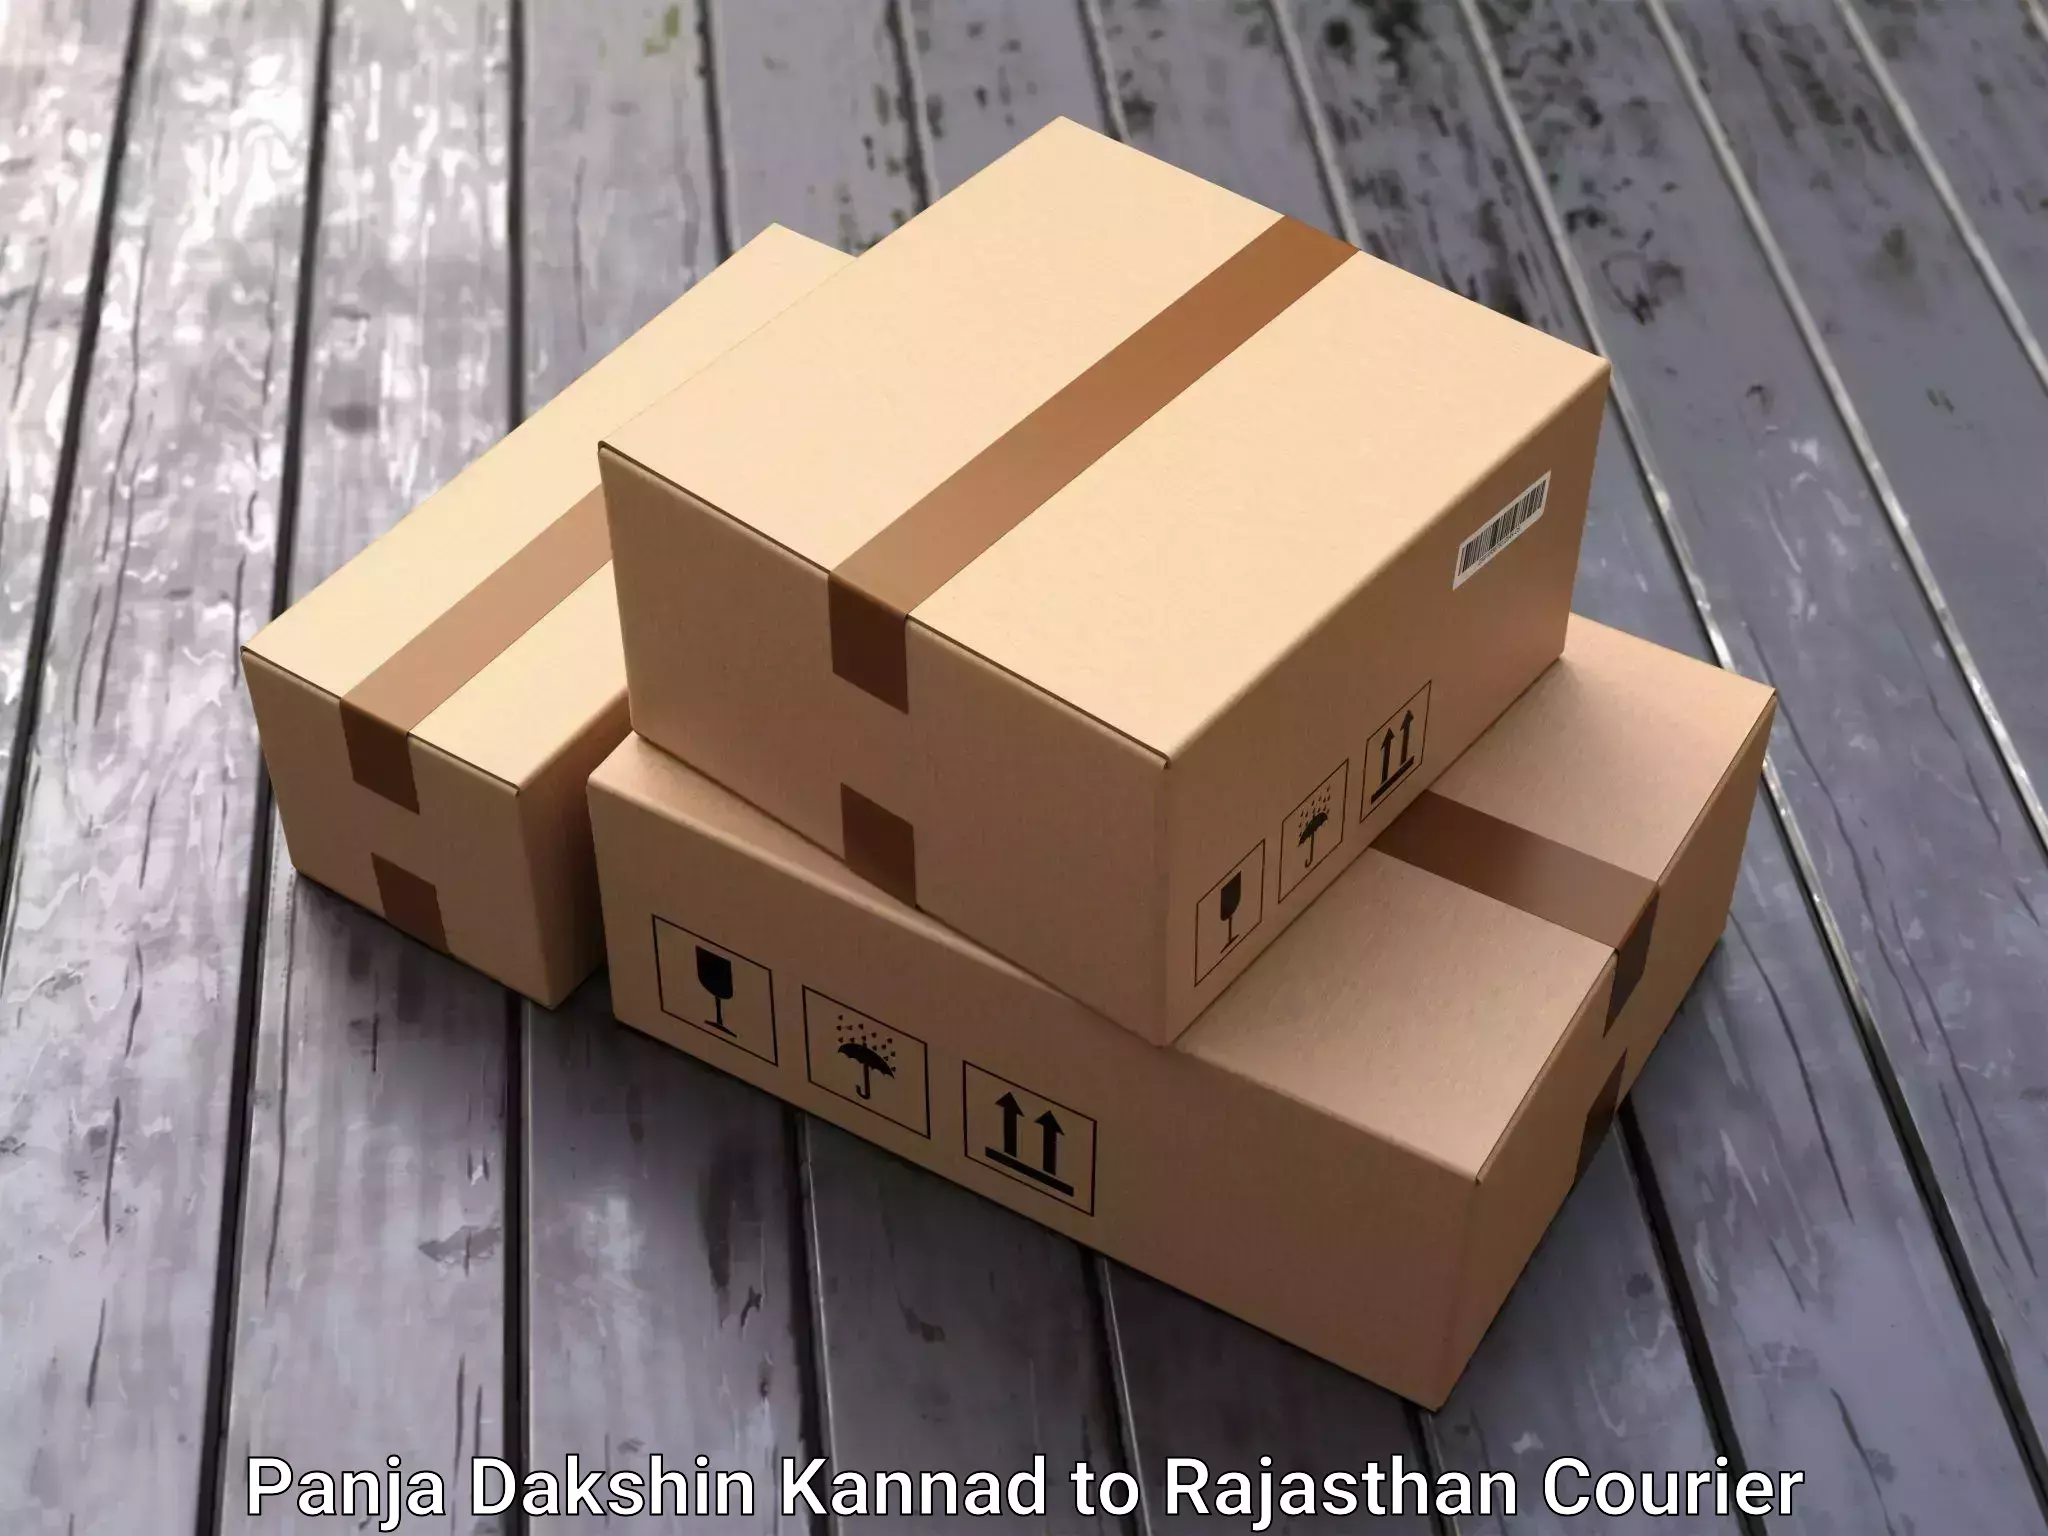 Furniture transport service Panja Dakshin Kannad to Rajasthan